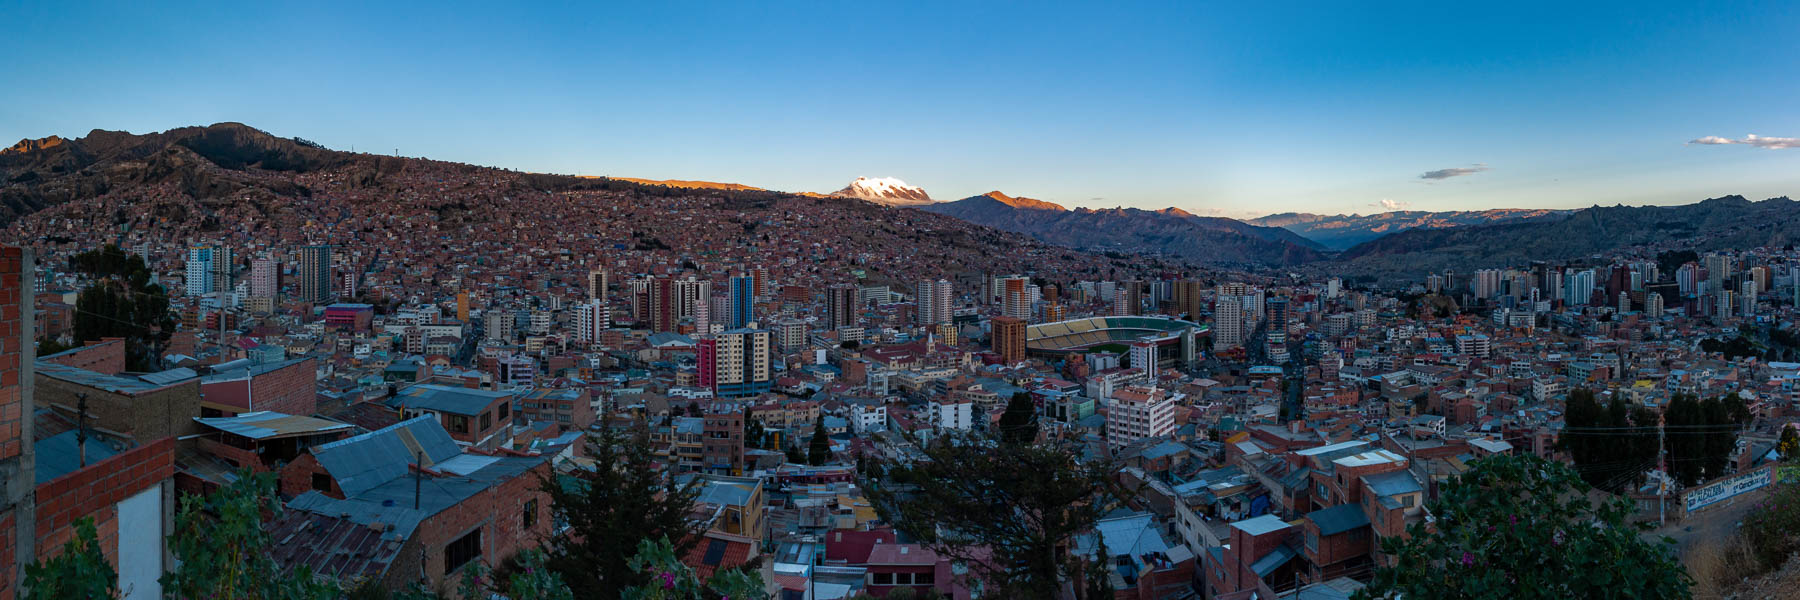 La Paz : point de vue de Killi Killi le soir, au loin l'Illimani, 6462 m